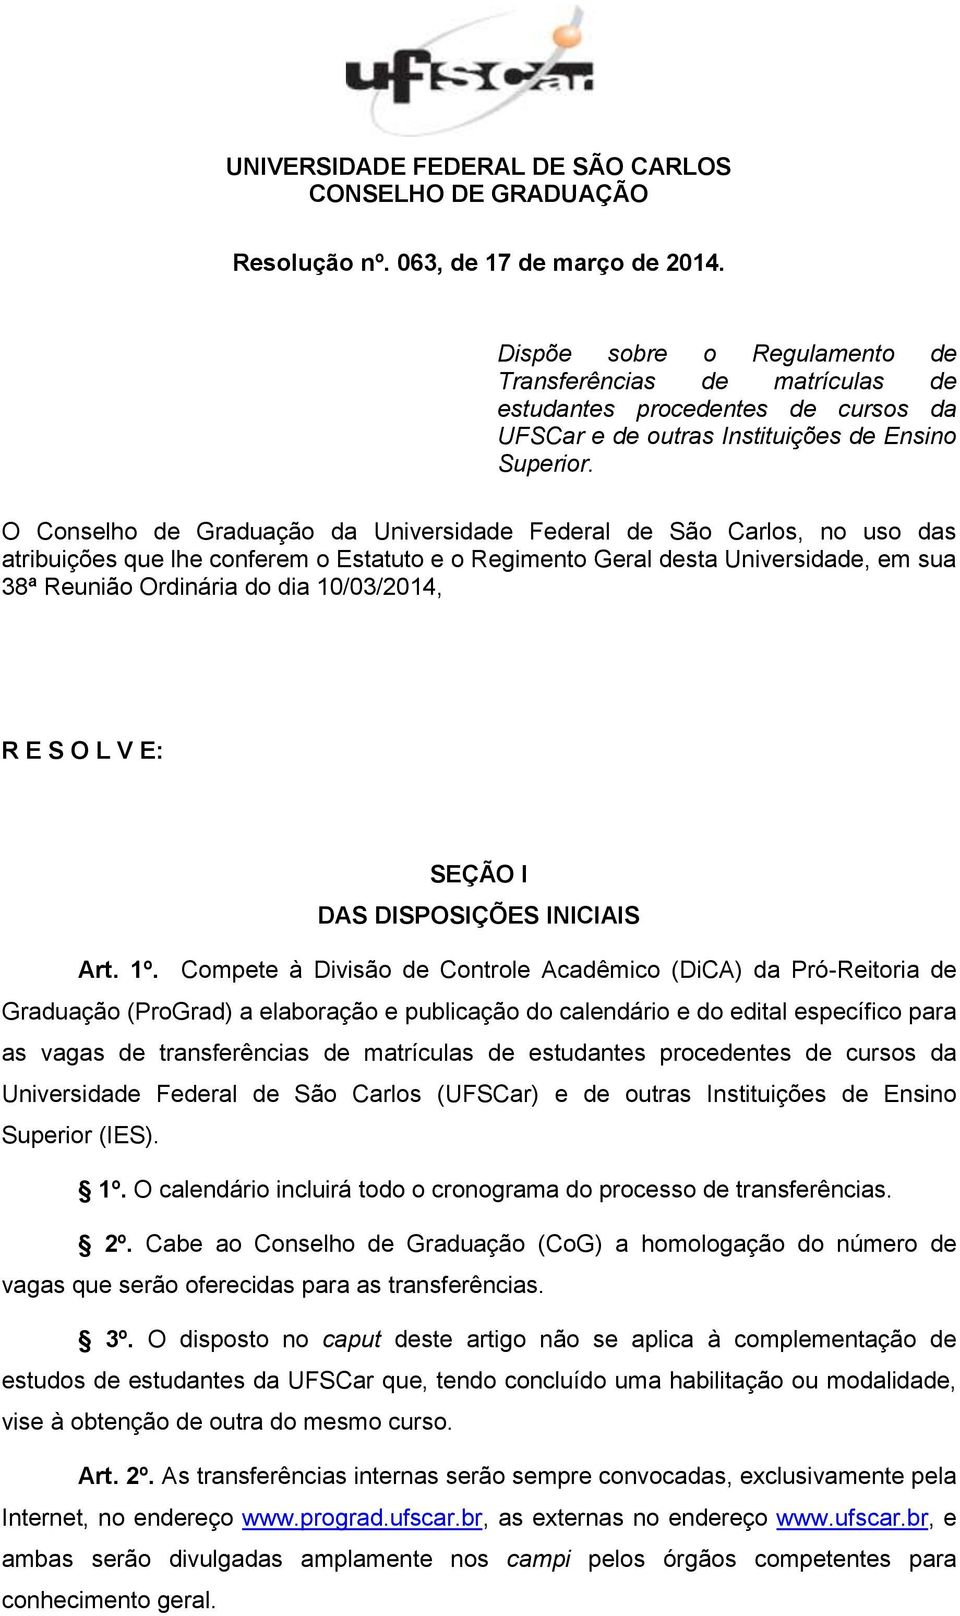 O Conselho de Graduação da Universidade Federal de São Carlos, no uso das atribuições que lhe conferem o Estatuto e o Regimento Geral desta Universidade, em sua 38ª Reunião Ordinária do dia